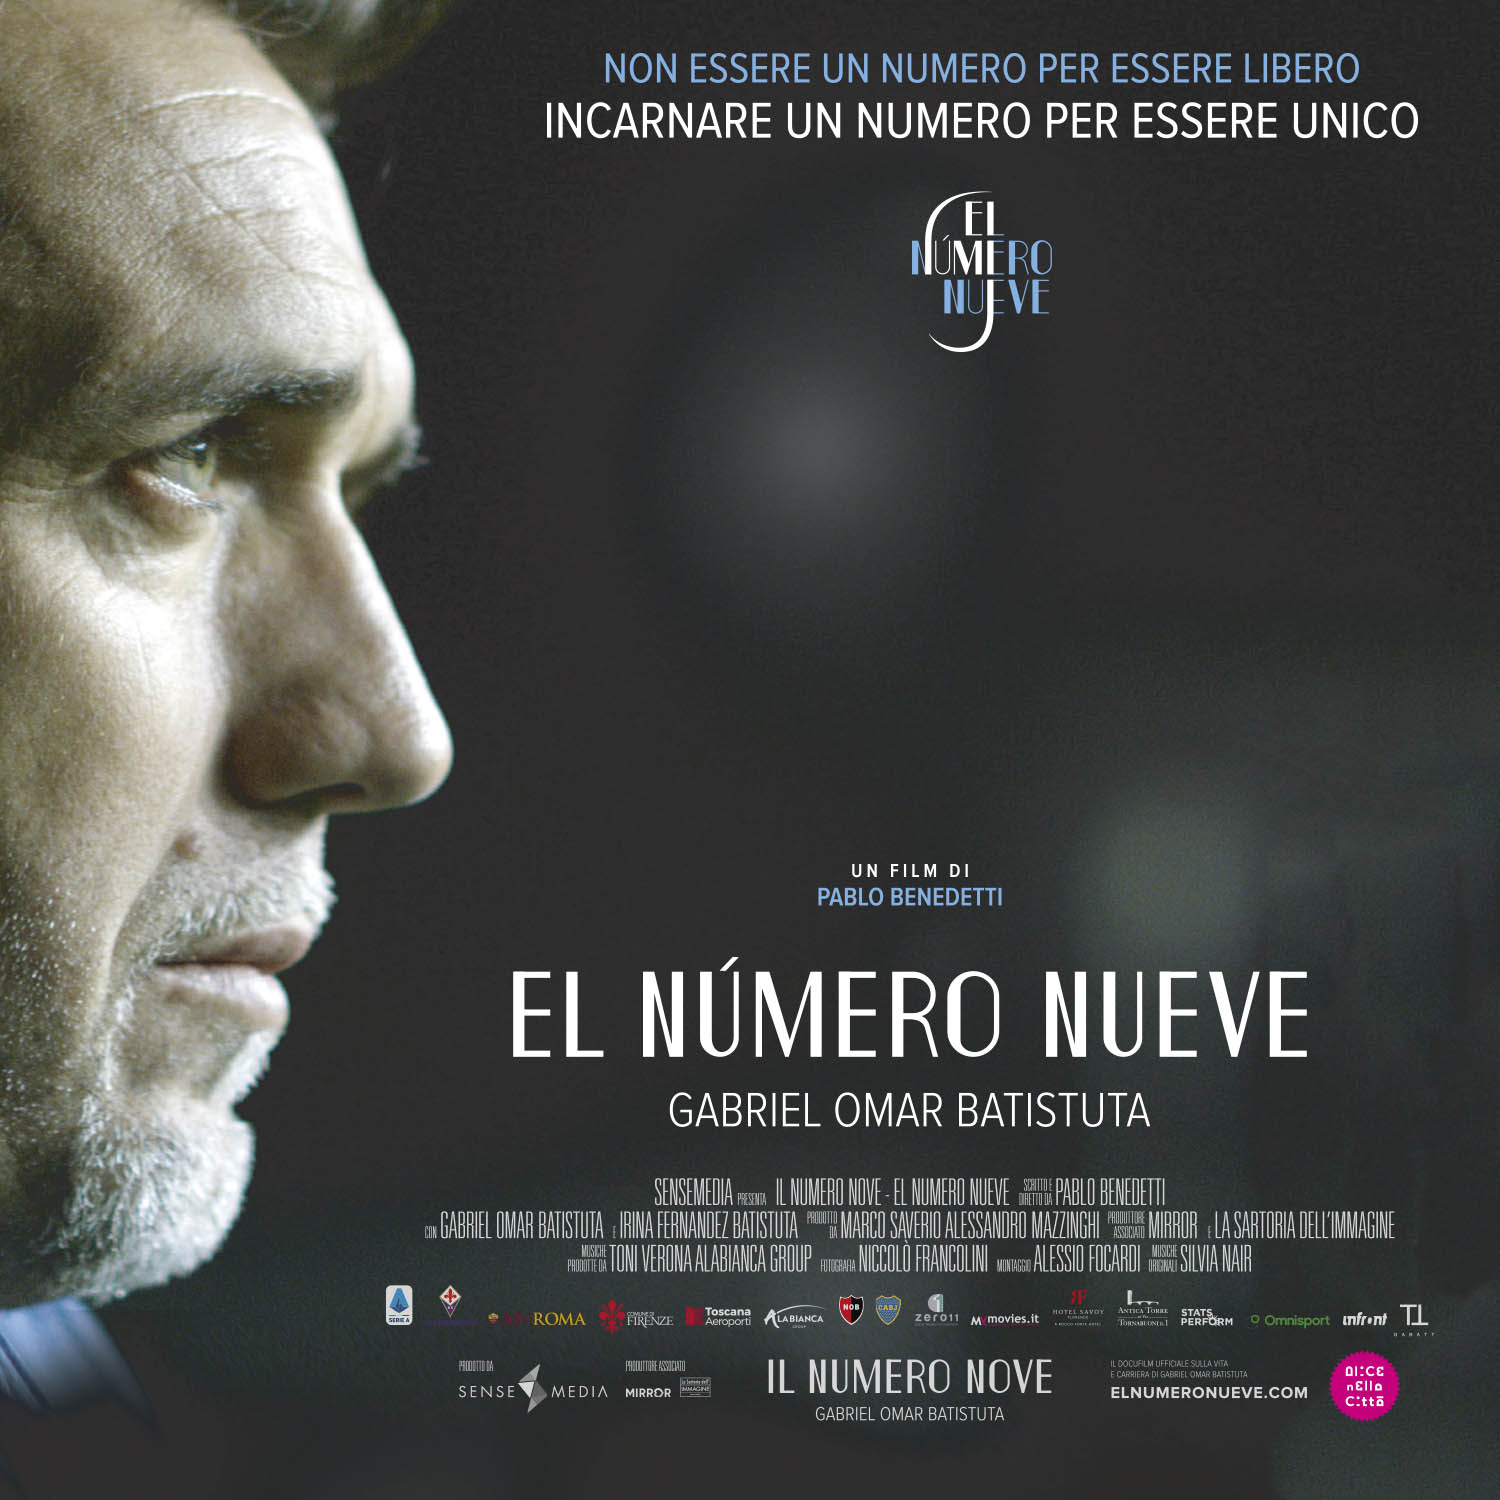 Dvd Numero Nueve (El): Gabriel Omar Batistuta NUOVO SIGILLATO, EDIZIONE DEL 14/10/2020 SUBITO DISPONIBILE